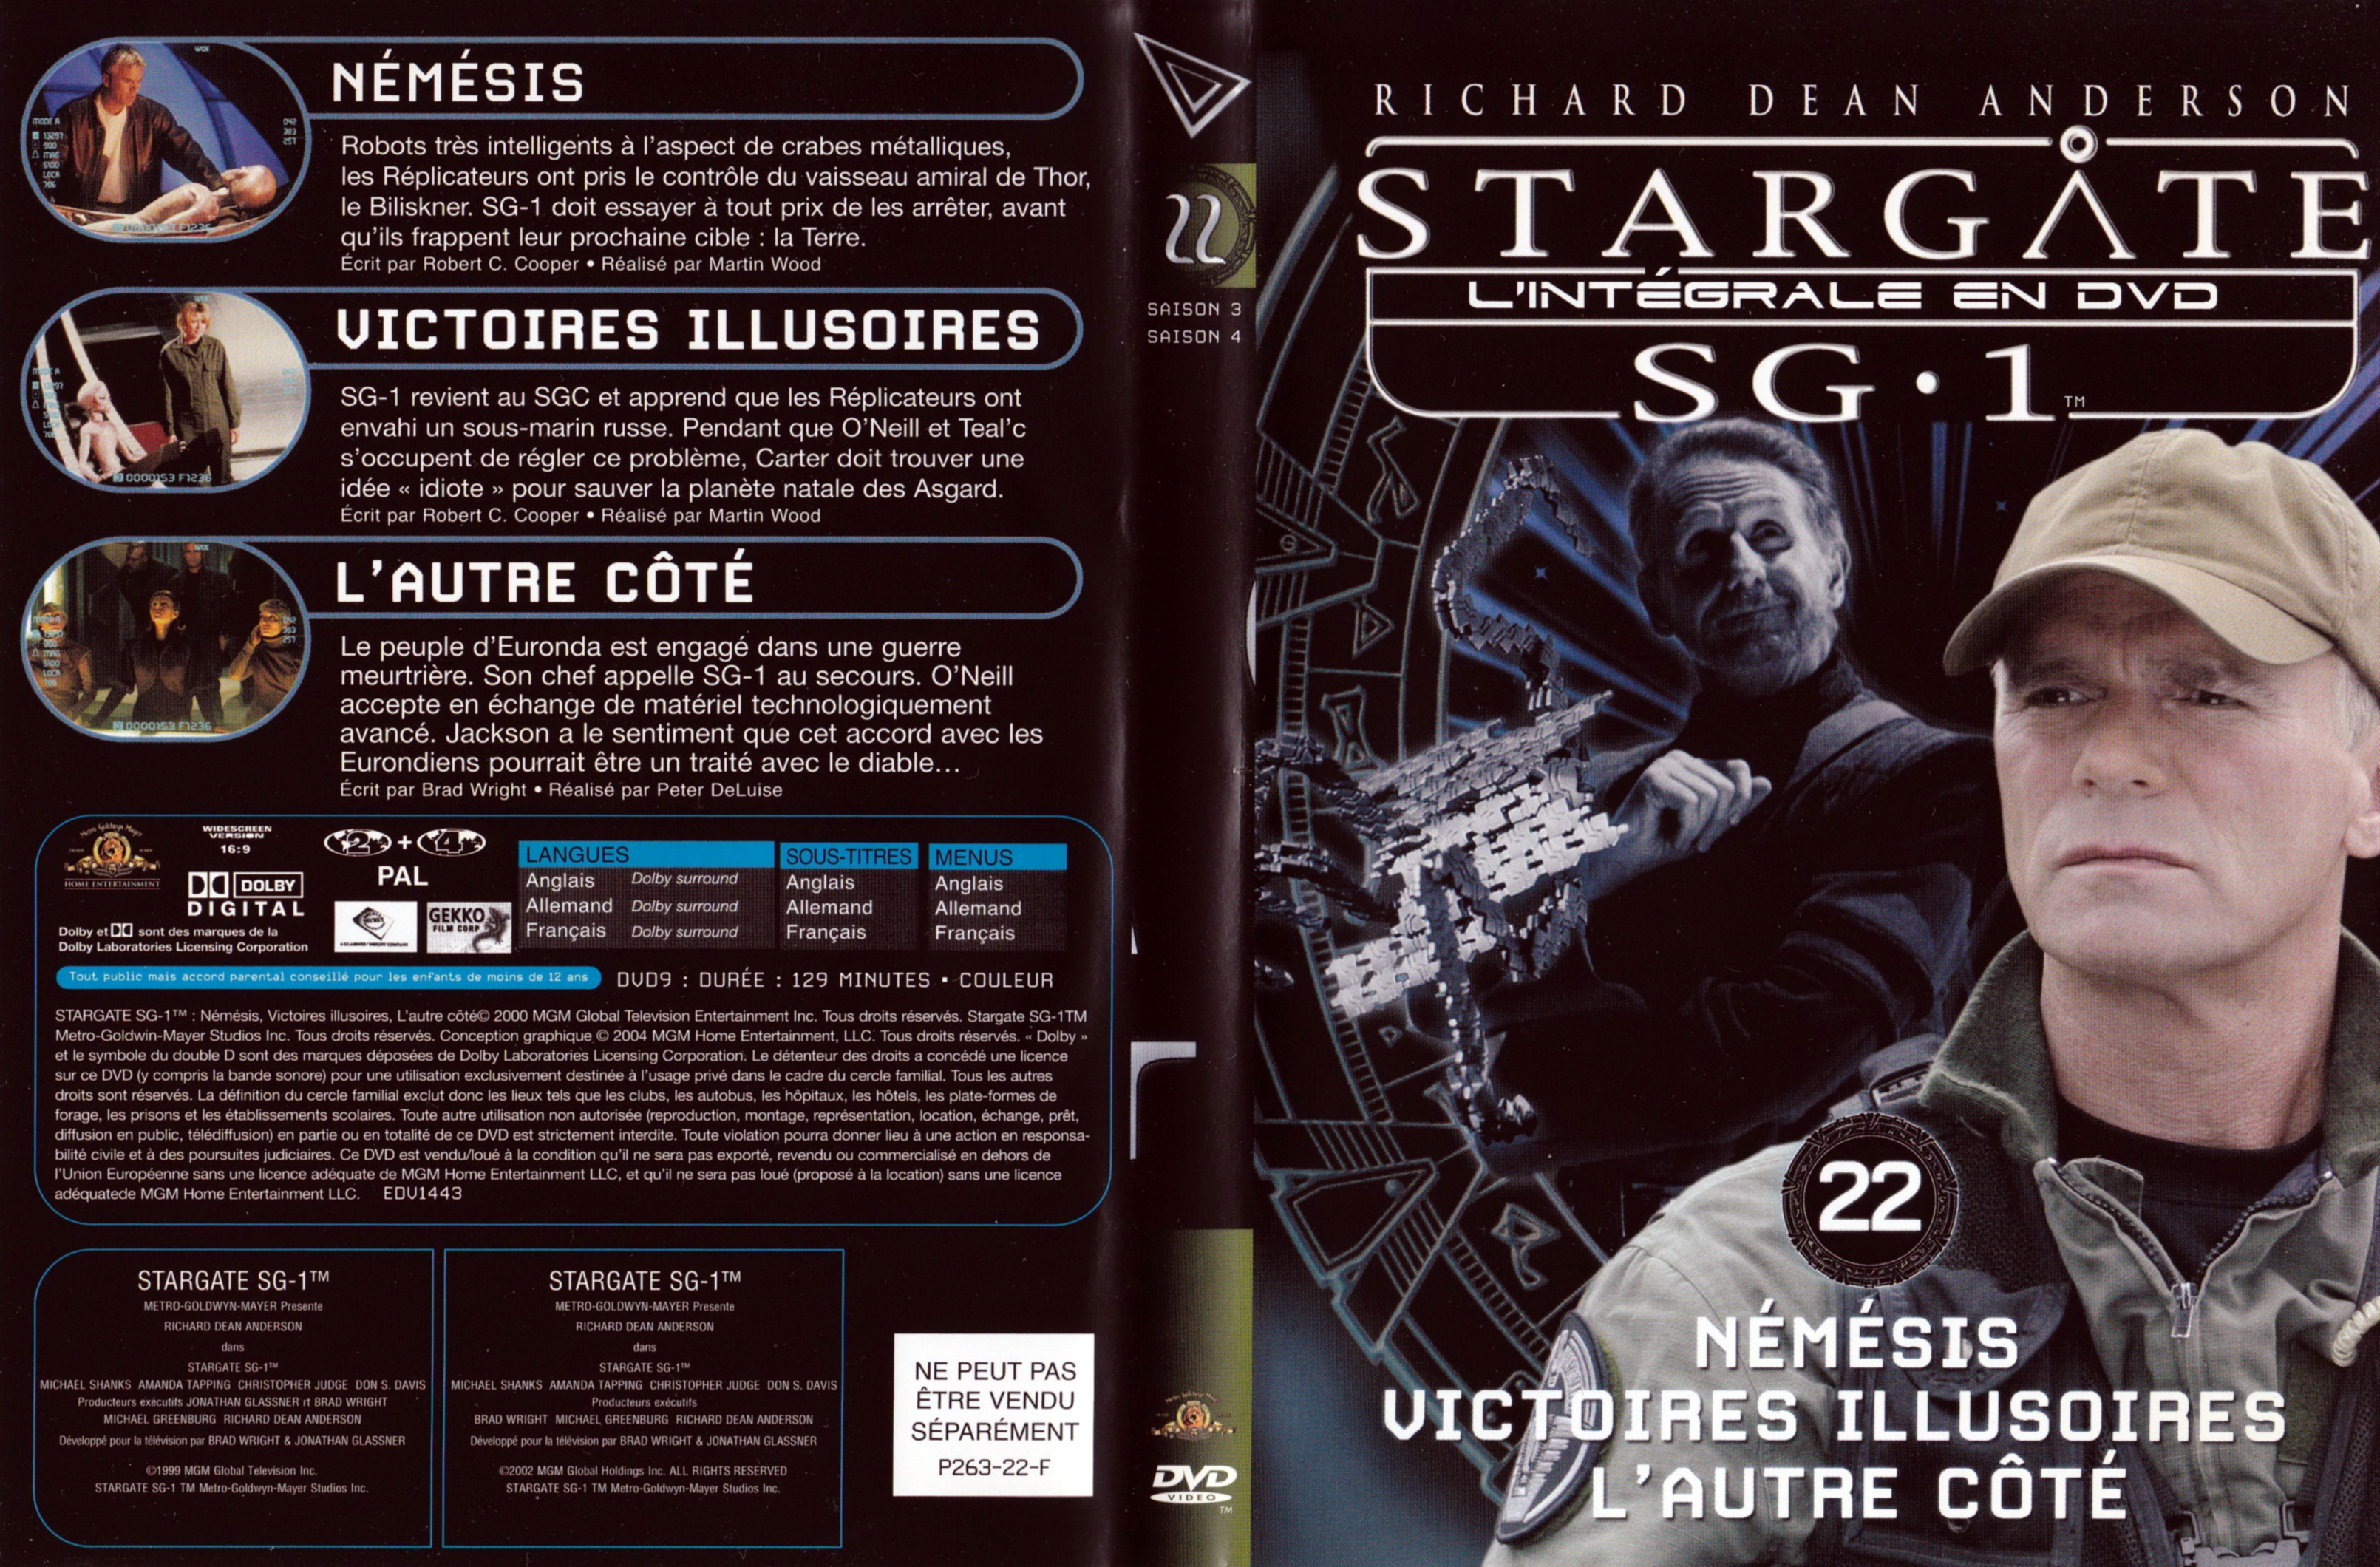 Jaquette DVD Stargate SG1 Intgrale Saison 3-4 vol 22